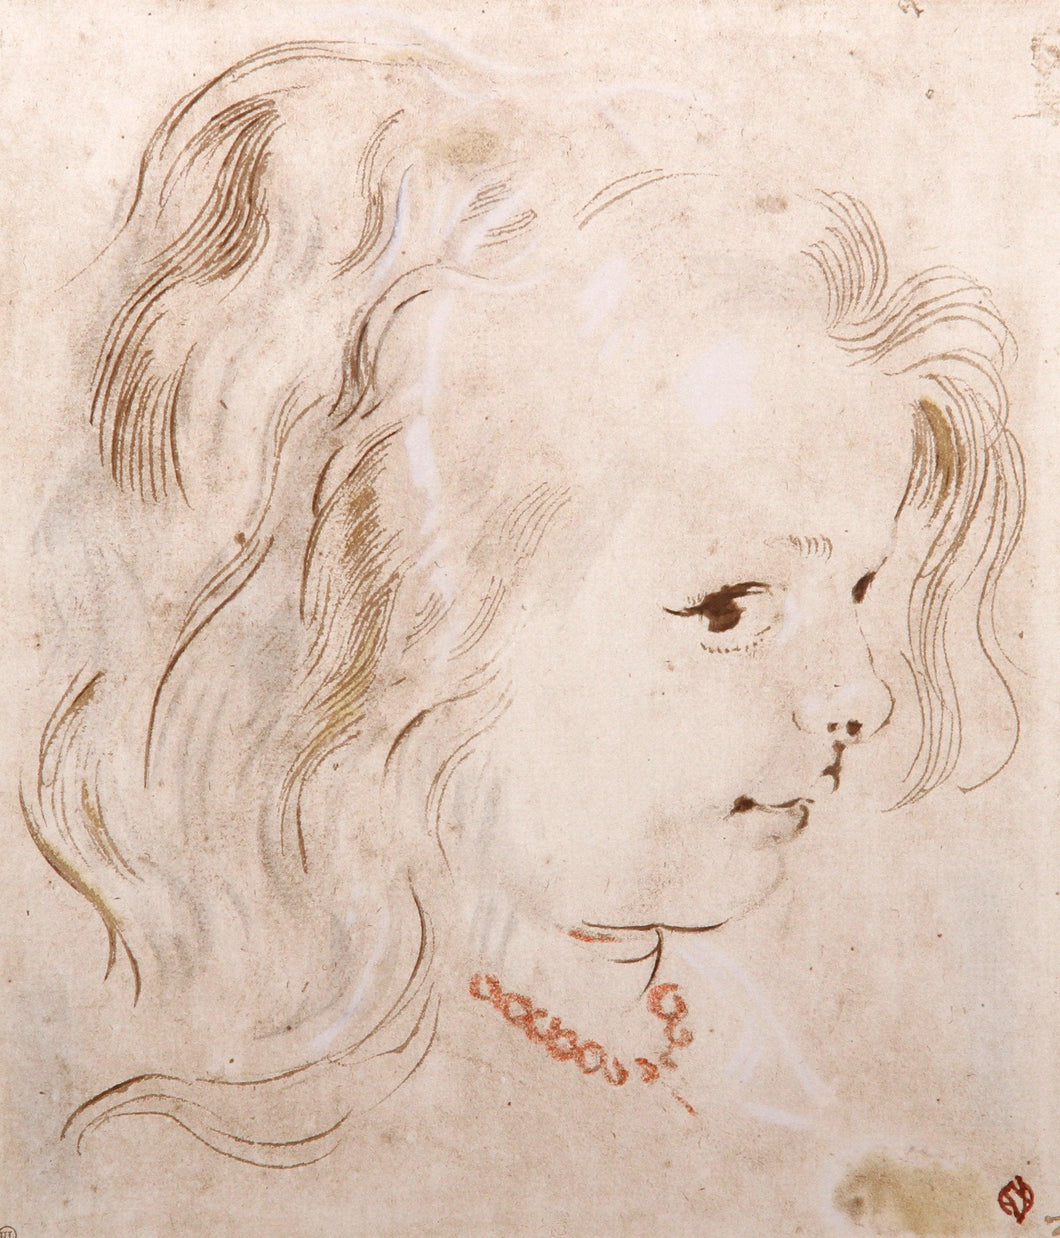 Portrait de Petite Fille Poster | Peter-Paul Rubens,{{product.type}}